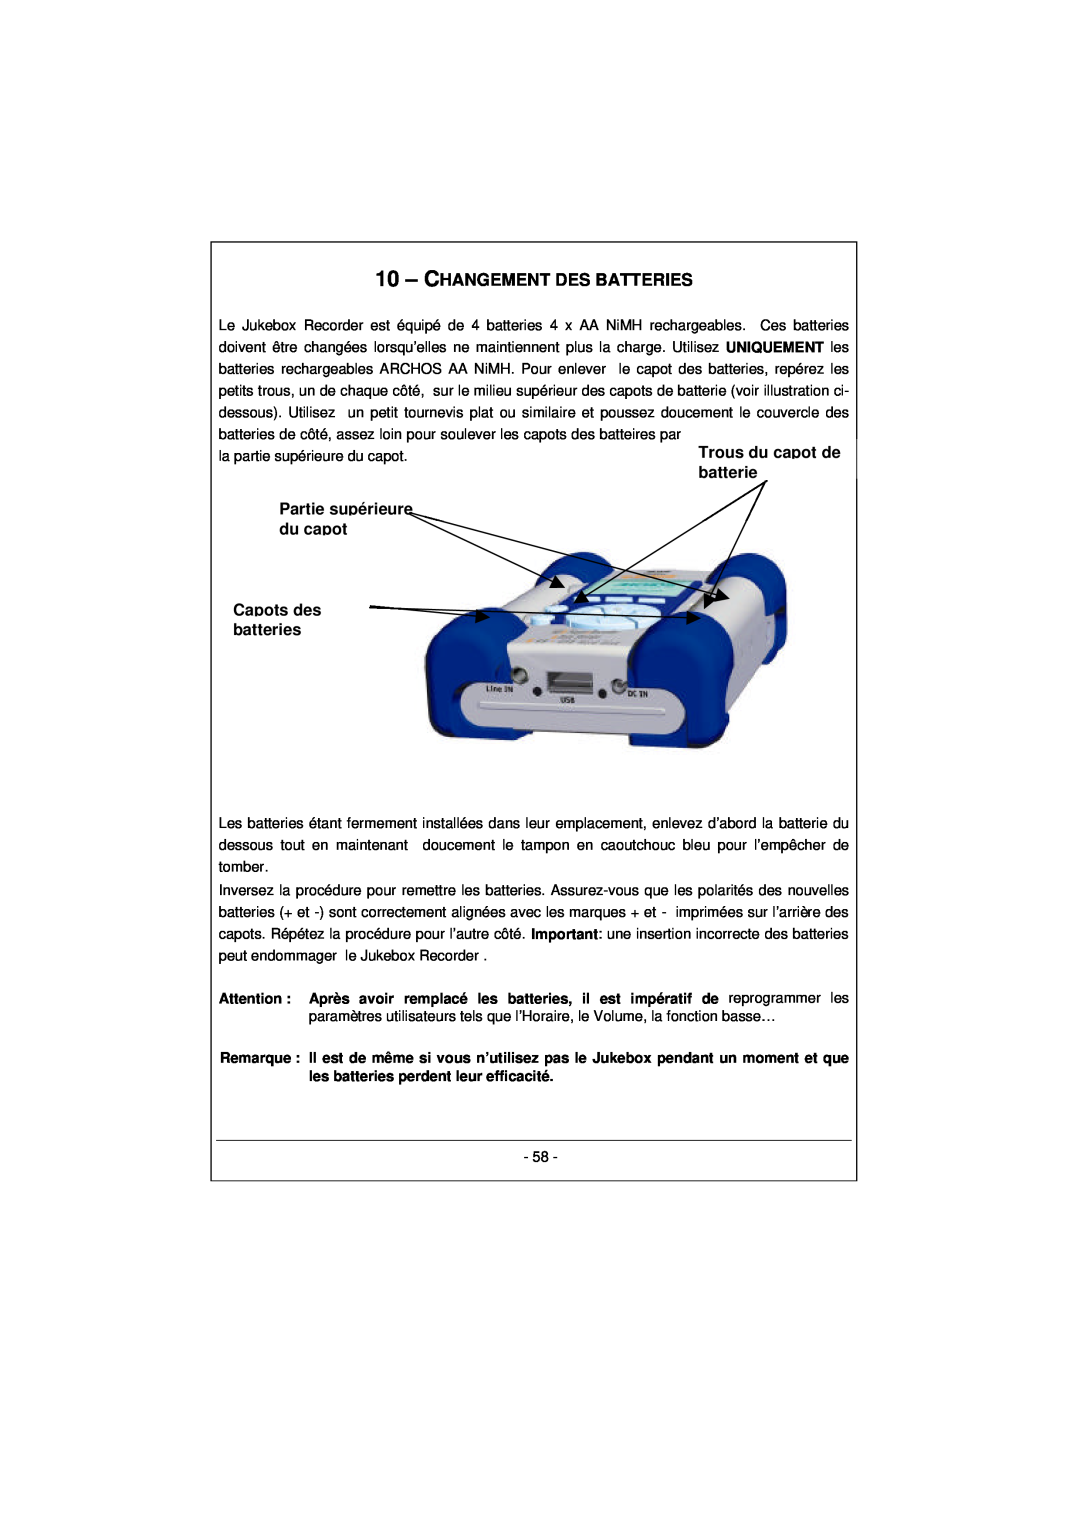 Archos 100628 manual 10 – CHANGEMENT DES BATTERIES, Partie supérieure du capot Capots des batteries 